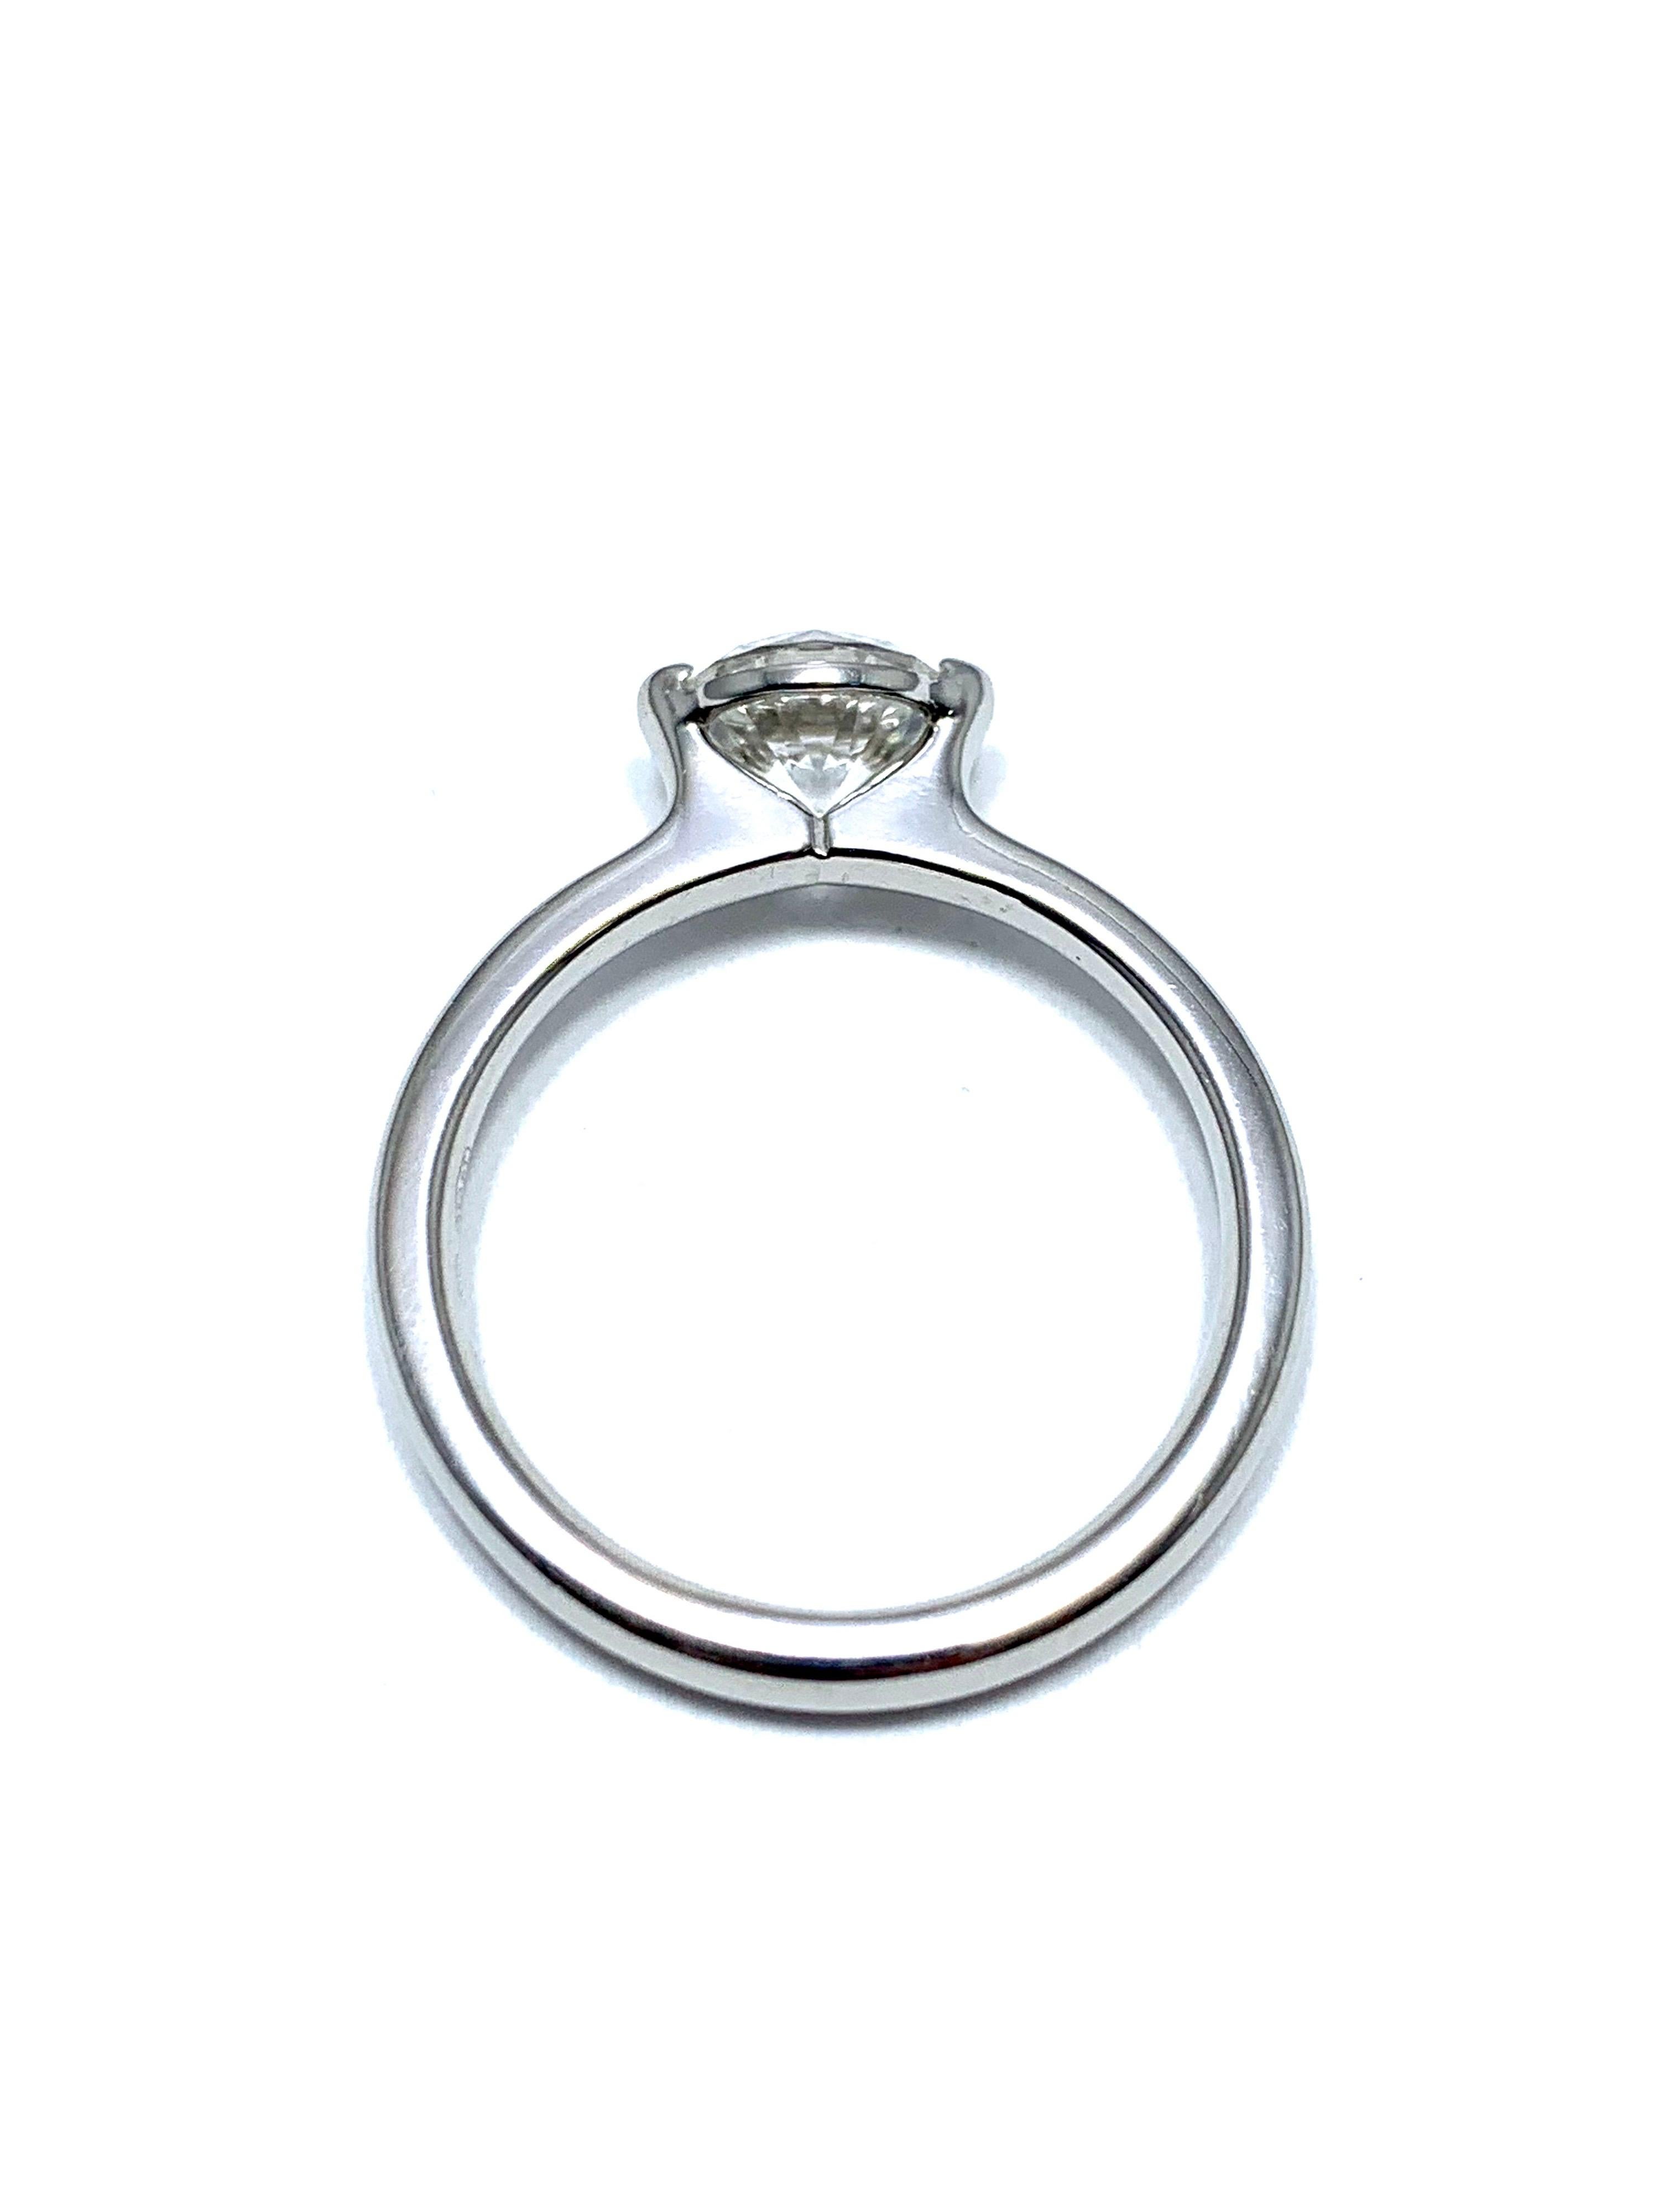 Round Cut Ideal Cut Round Brilliant 0.84 Carat Diamond Solitaire Platinum Engagement Ring